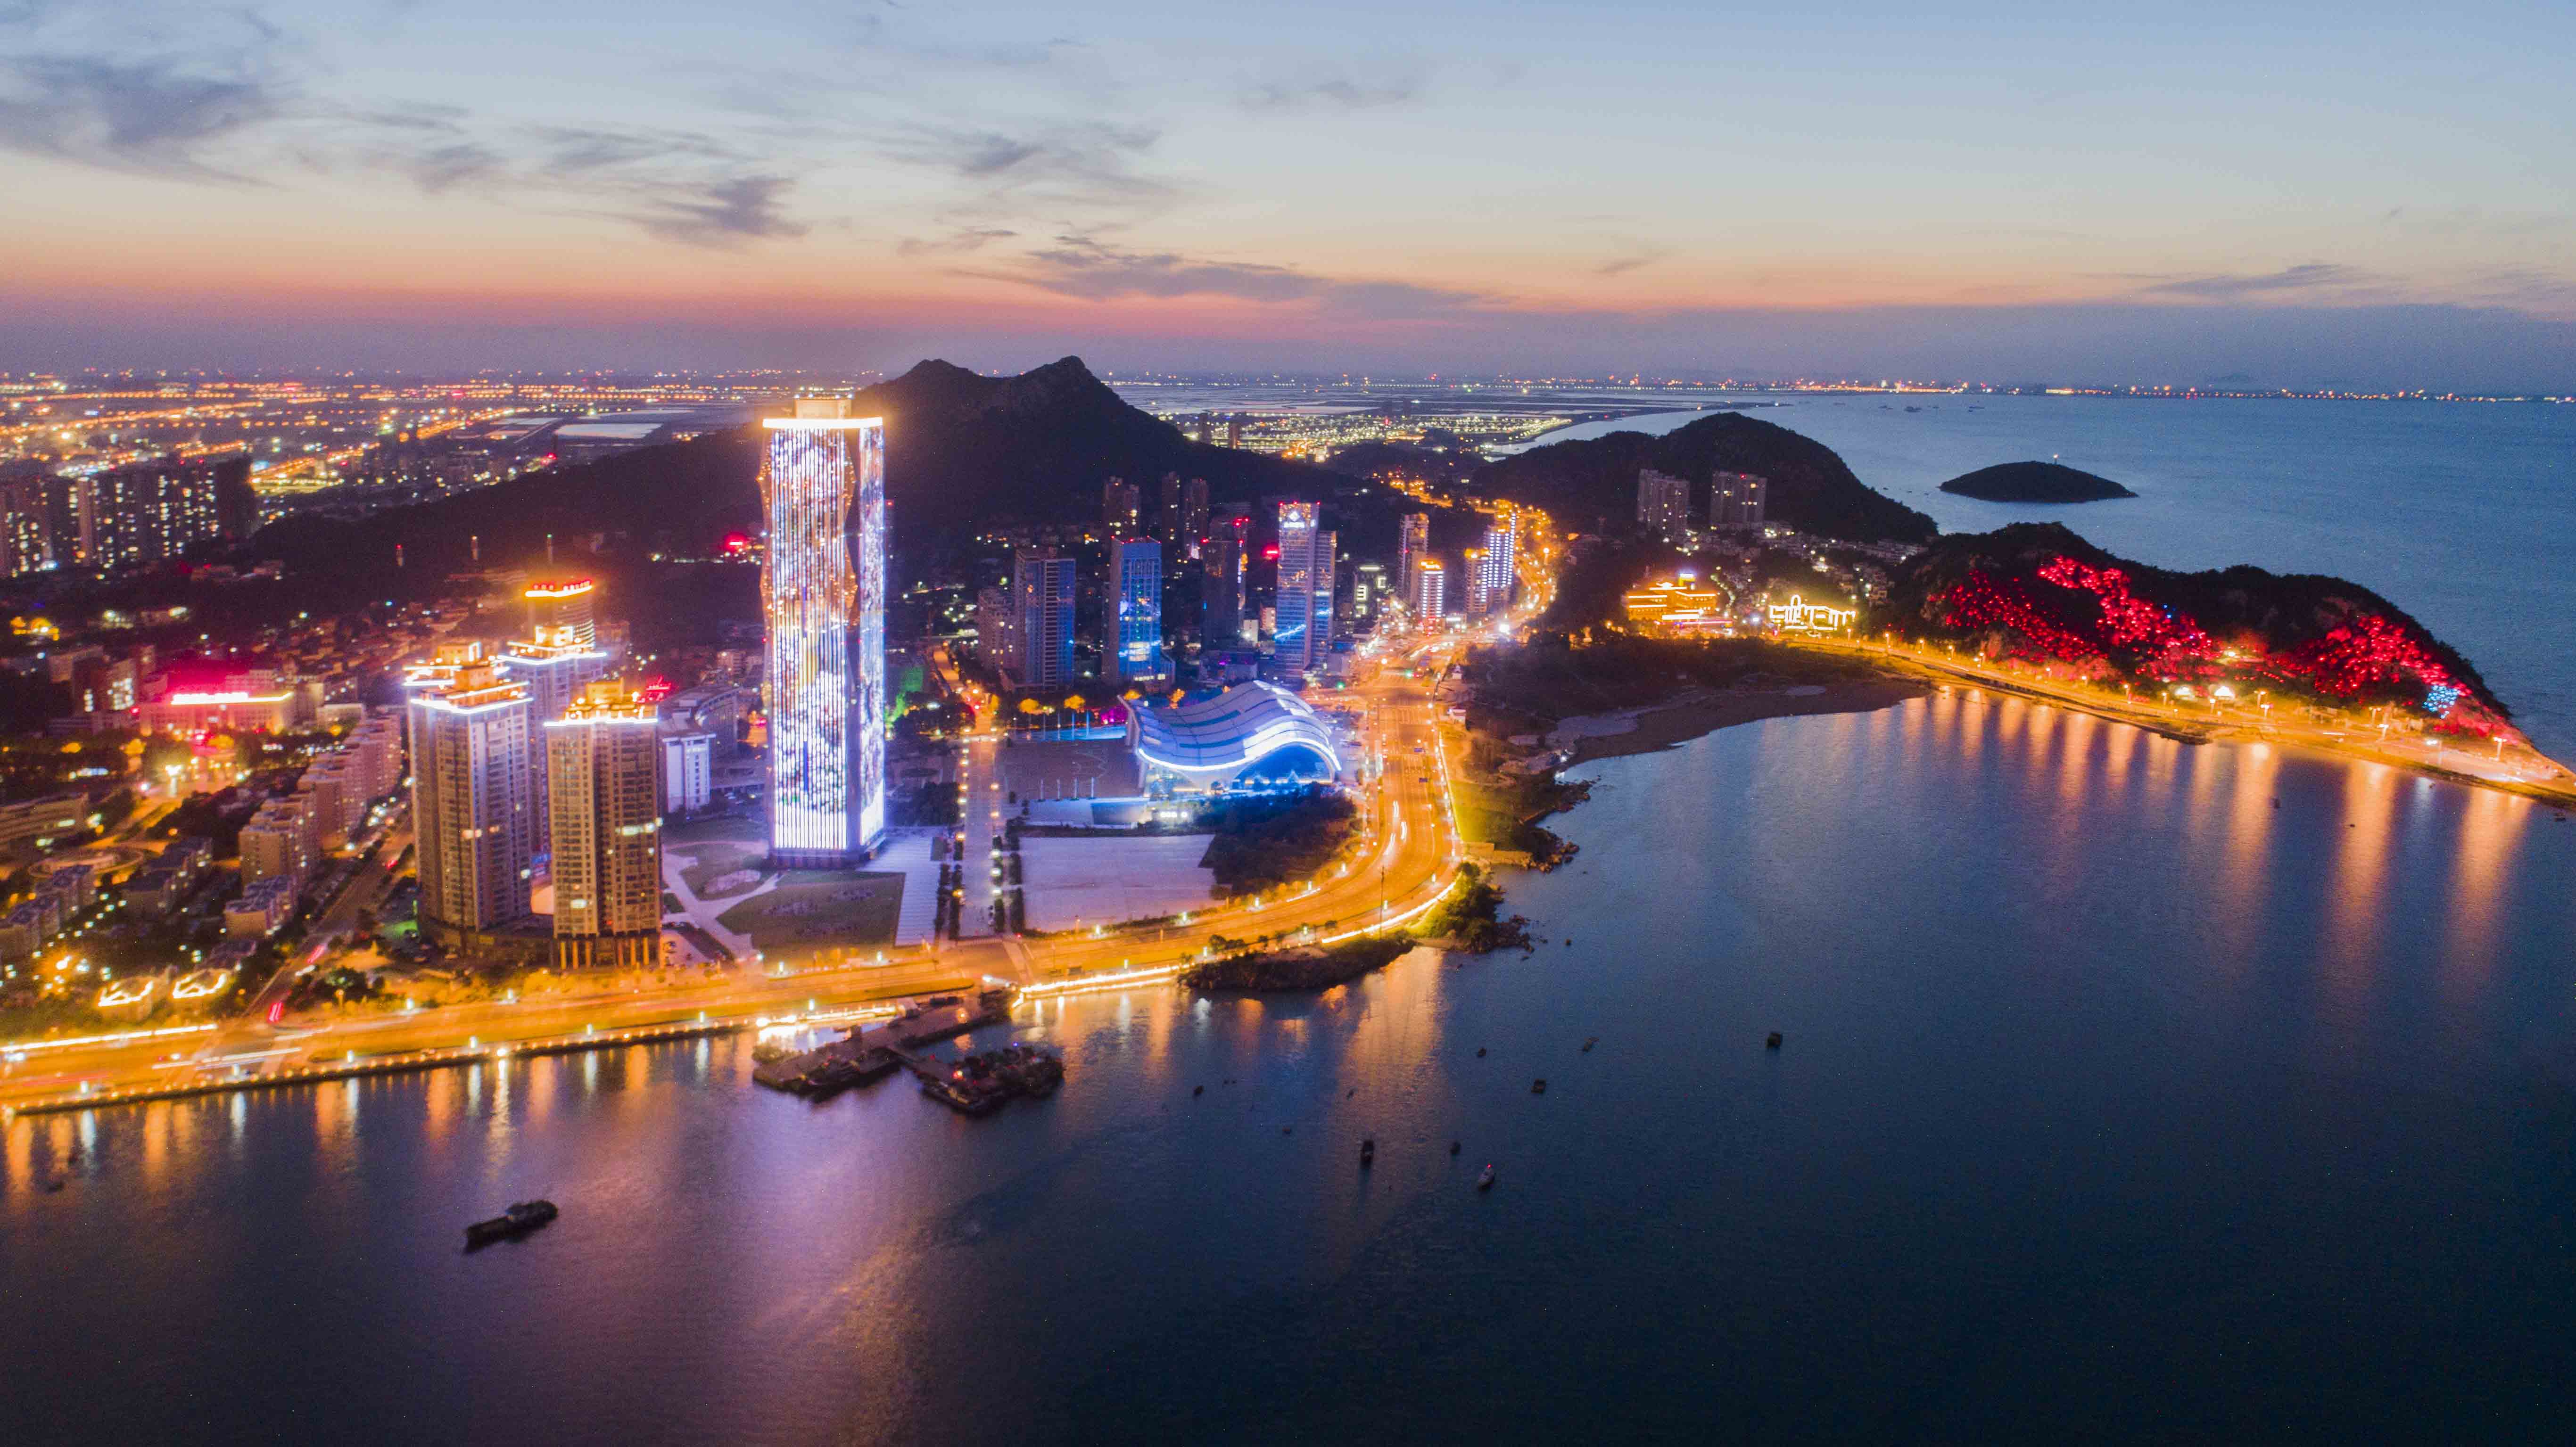 连云港连云区国展中心片区夜景照明设备项目工程——2021神灯奖申报